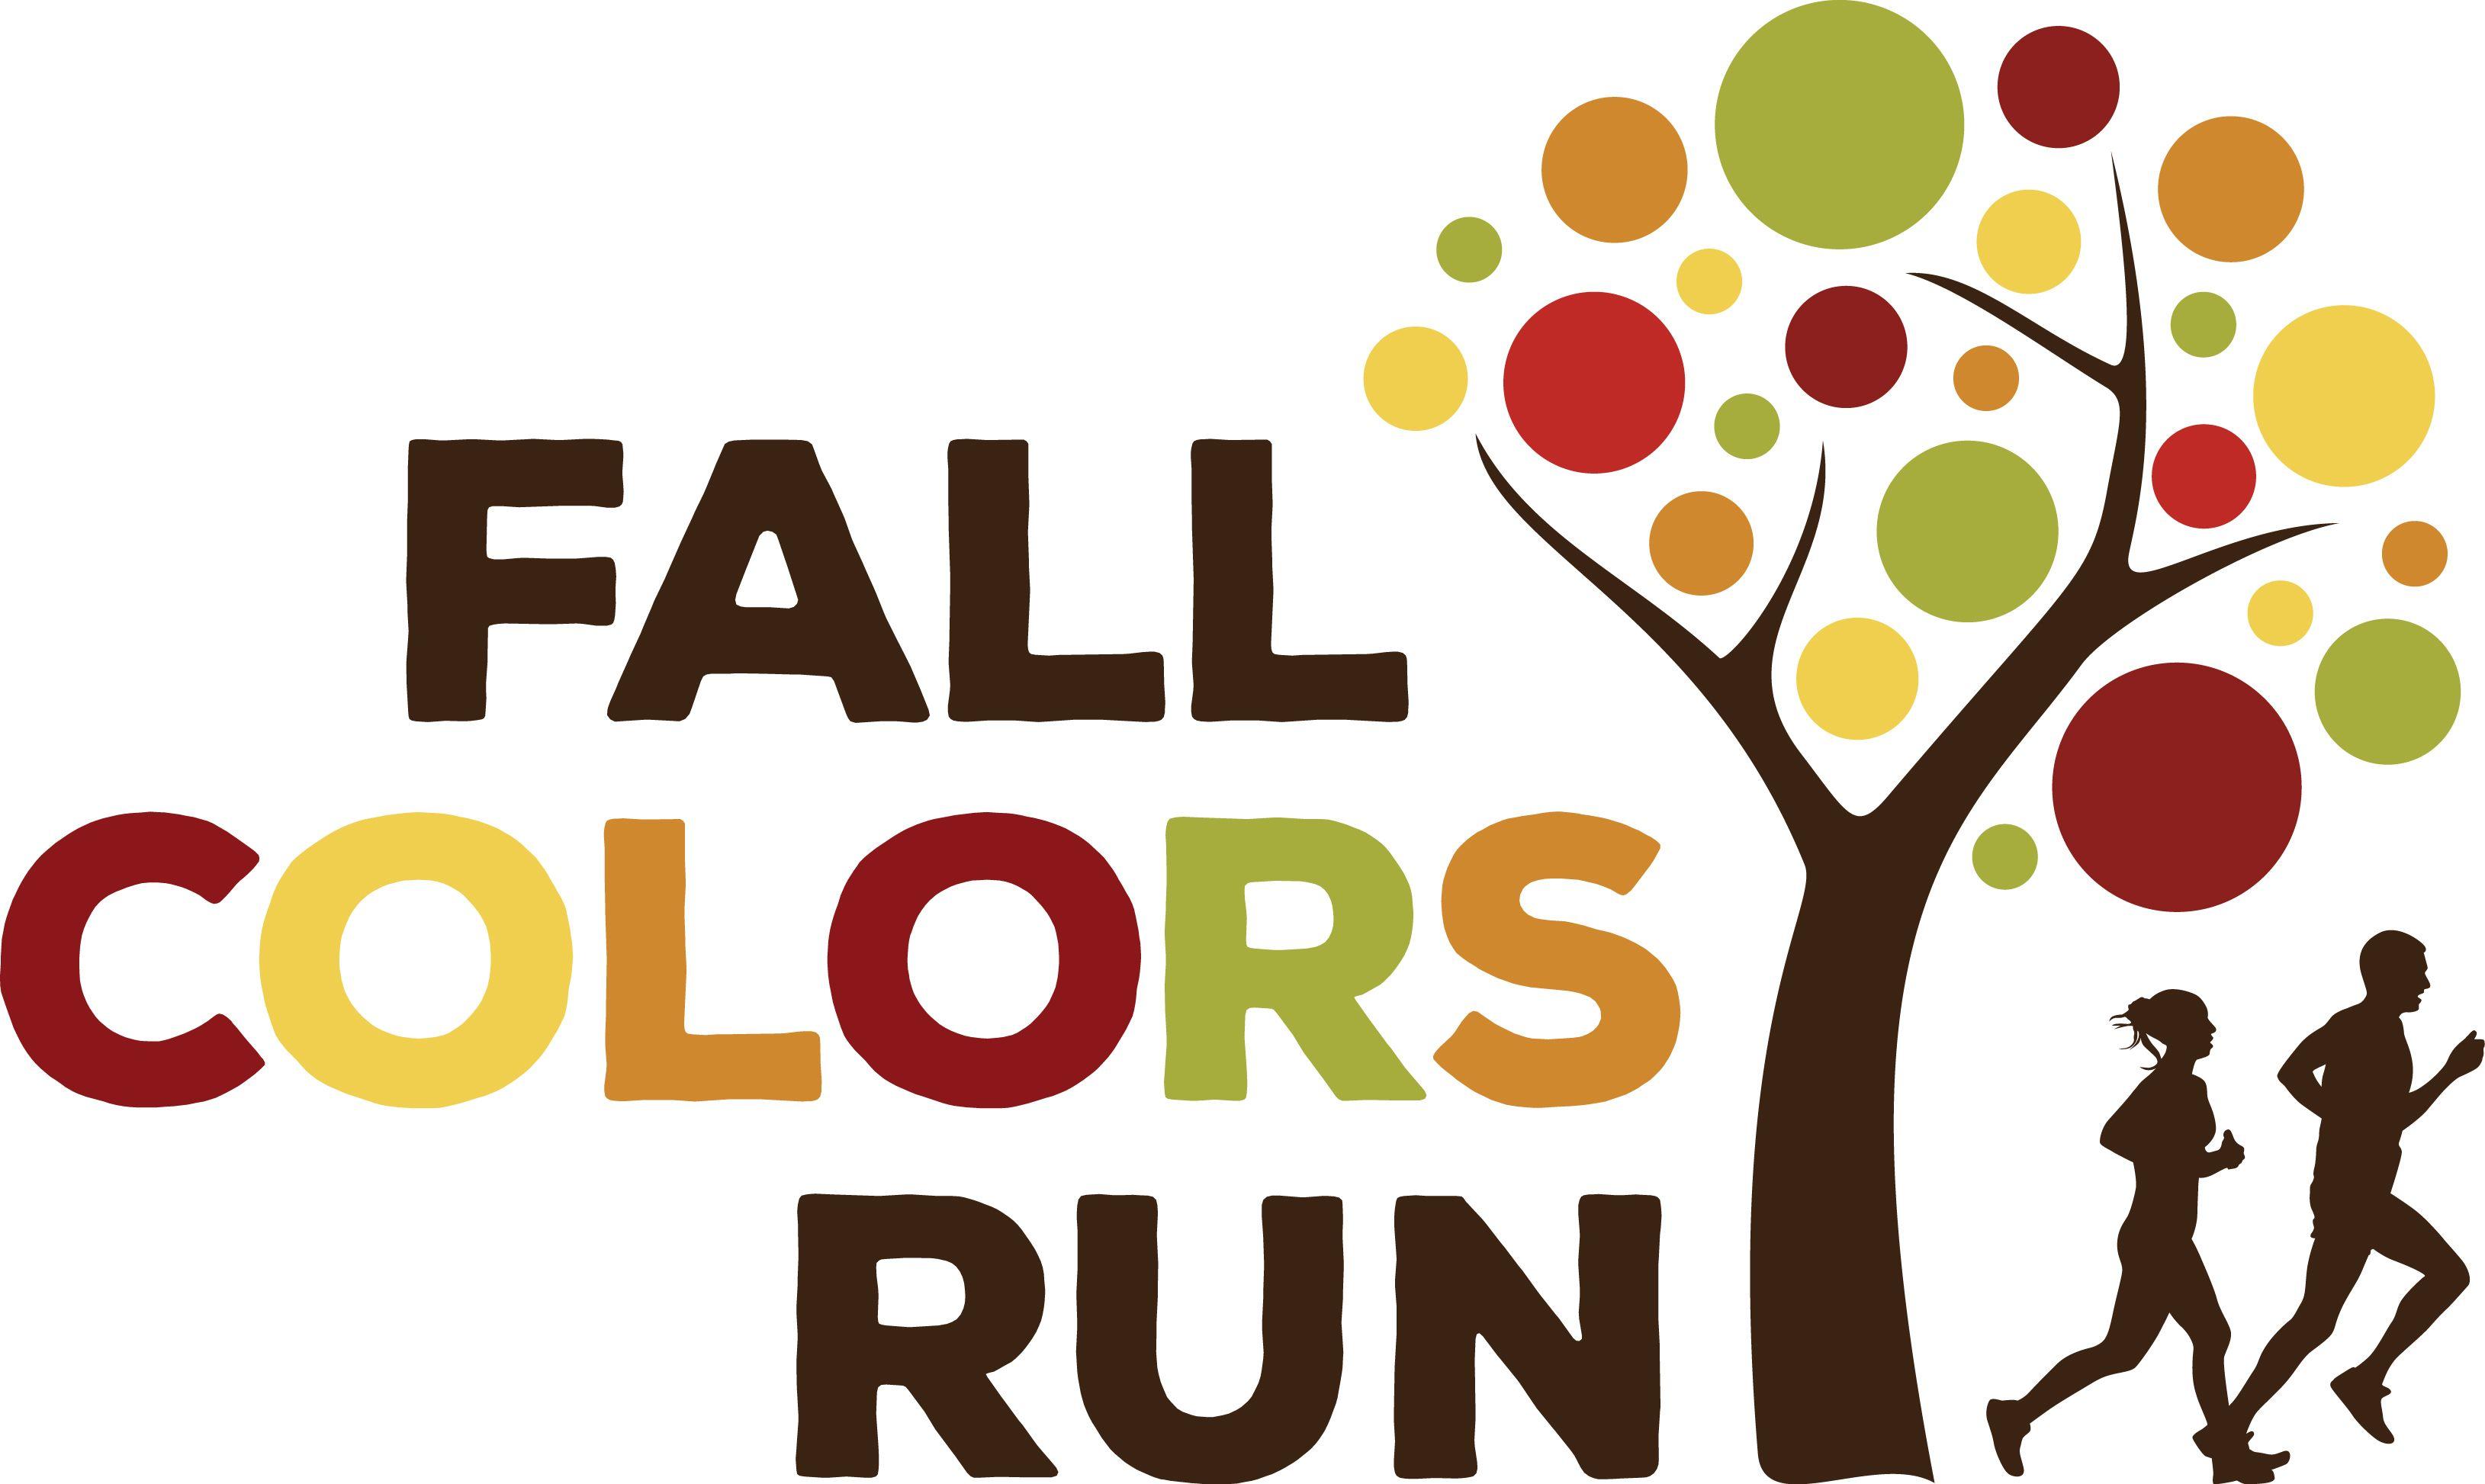 Fall Logo - Fall Colors Run |